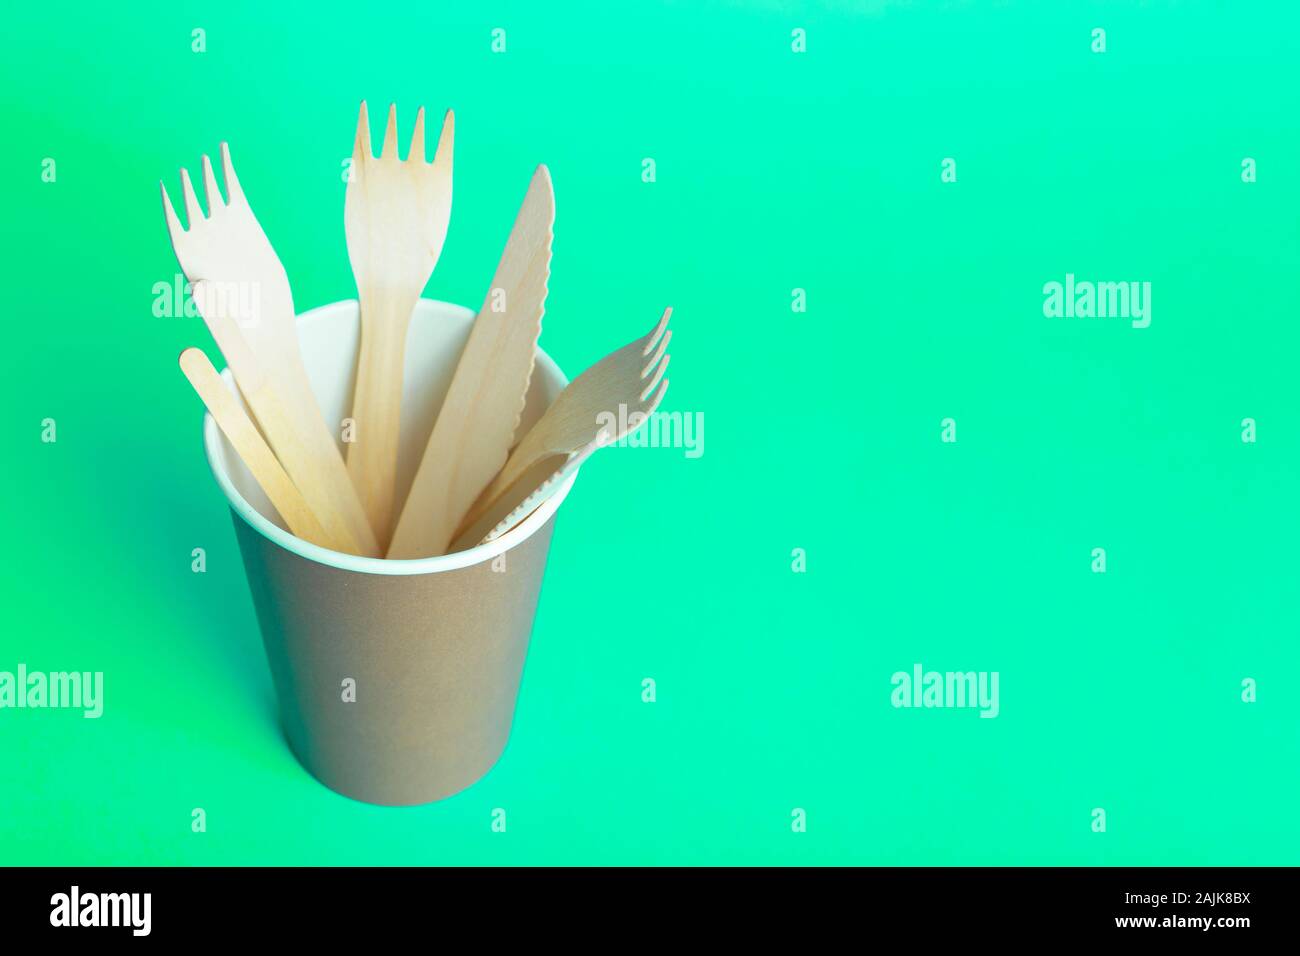 Horquillas de madera, cucharas y cuchillos para la comida en un vaso de papel sobre un fondo coloreado. Eco-friendly vajilla desechable sin plástico. Foto de stock